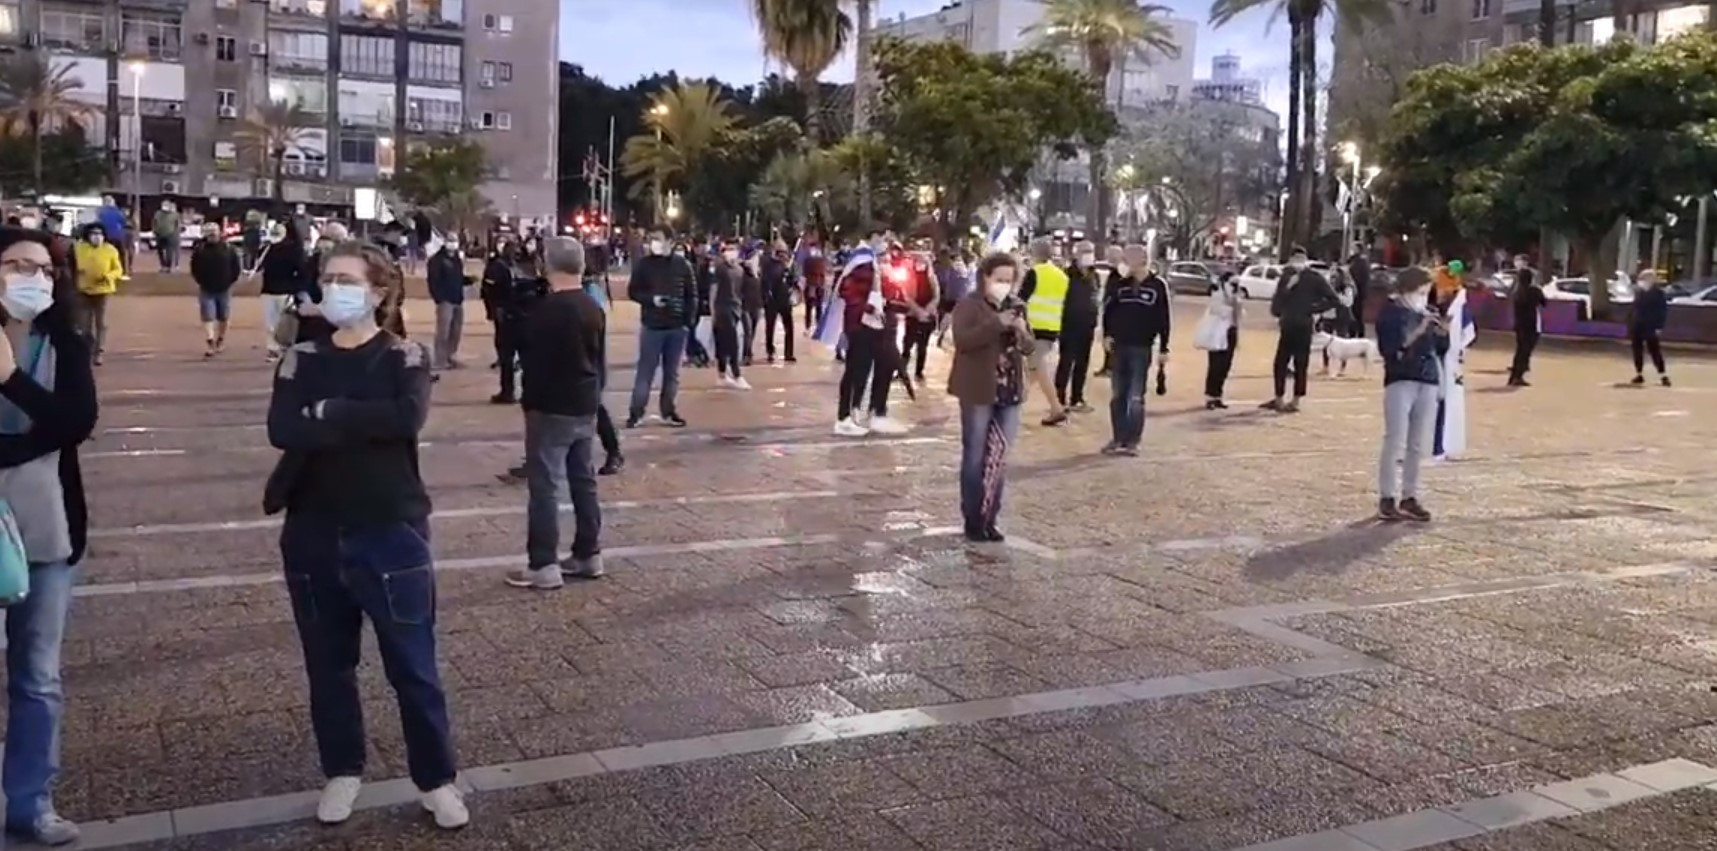 Αντικυβερνητική διαδήλωση στο Ισραήλ, με μάσκες και αποστάσεις [Βίντεο]